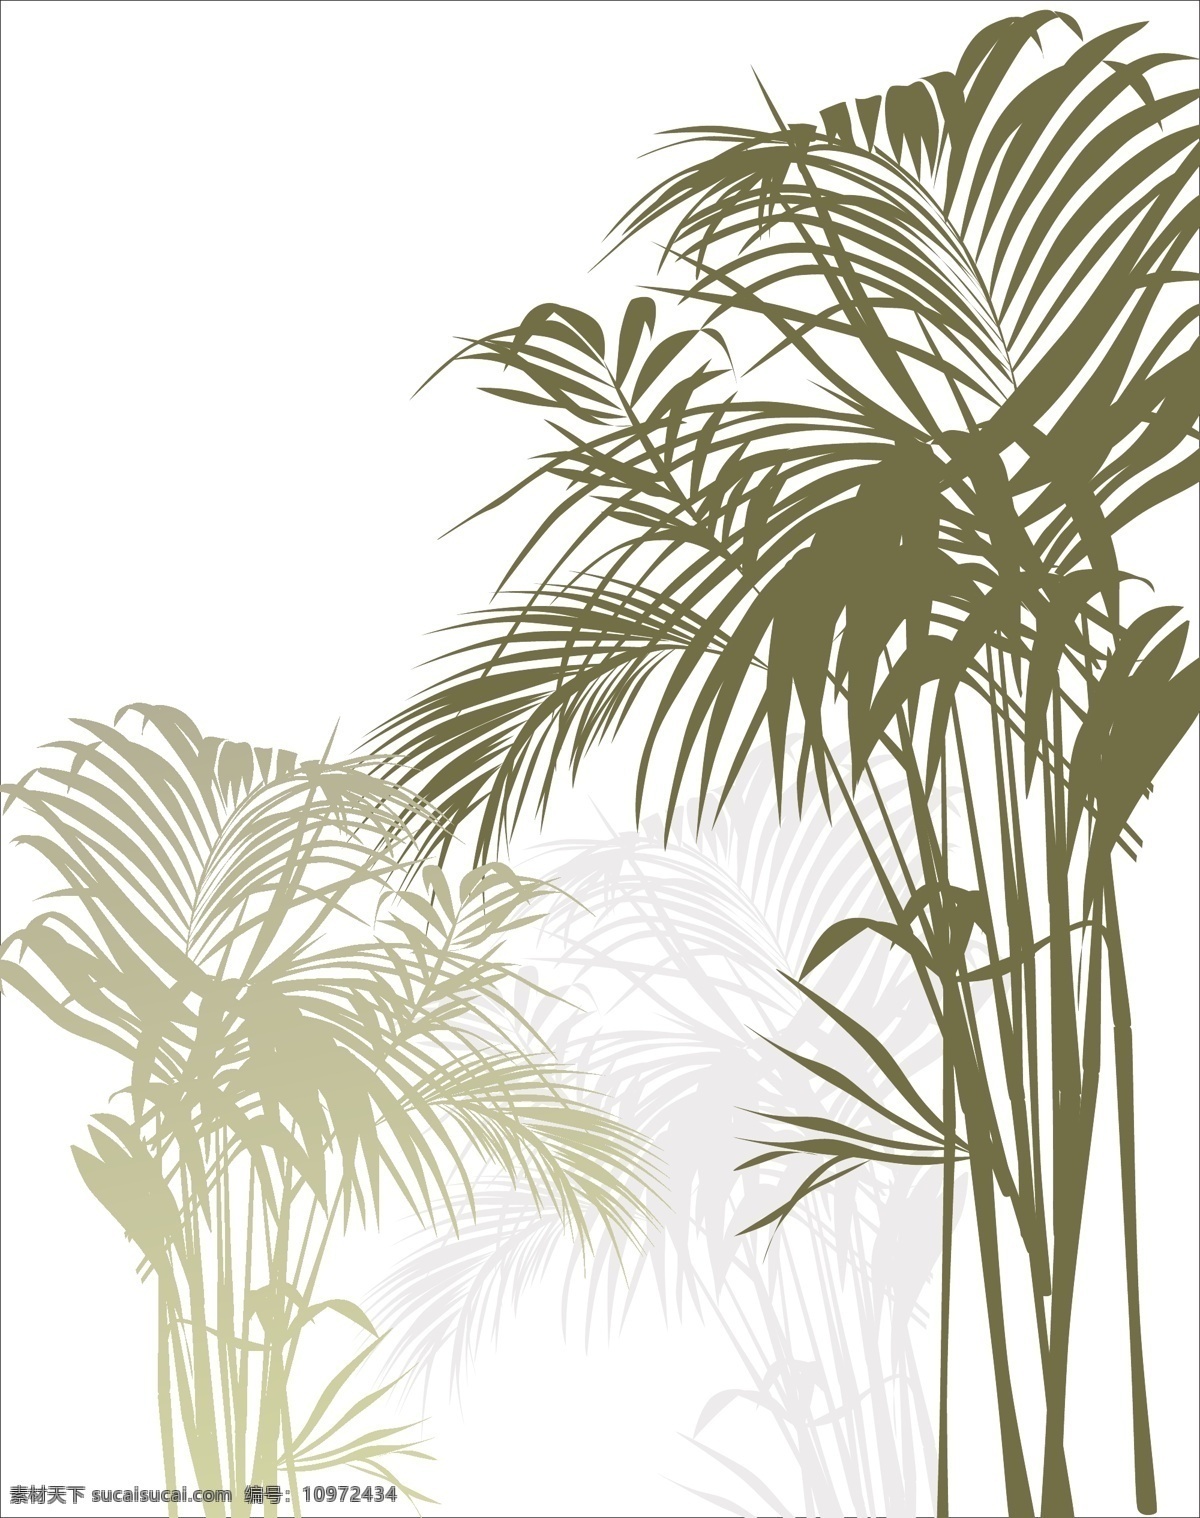 热带 丛林 植物 插图 矢量 矢量素材 设计素材 绿色